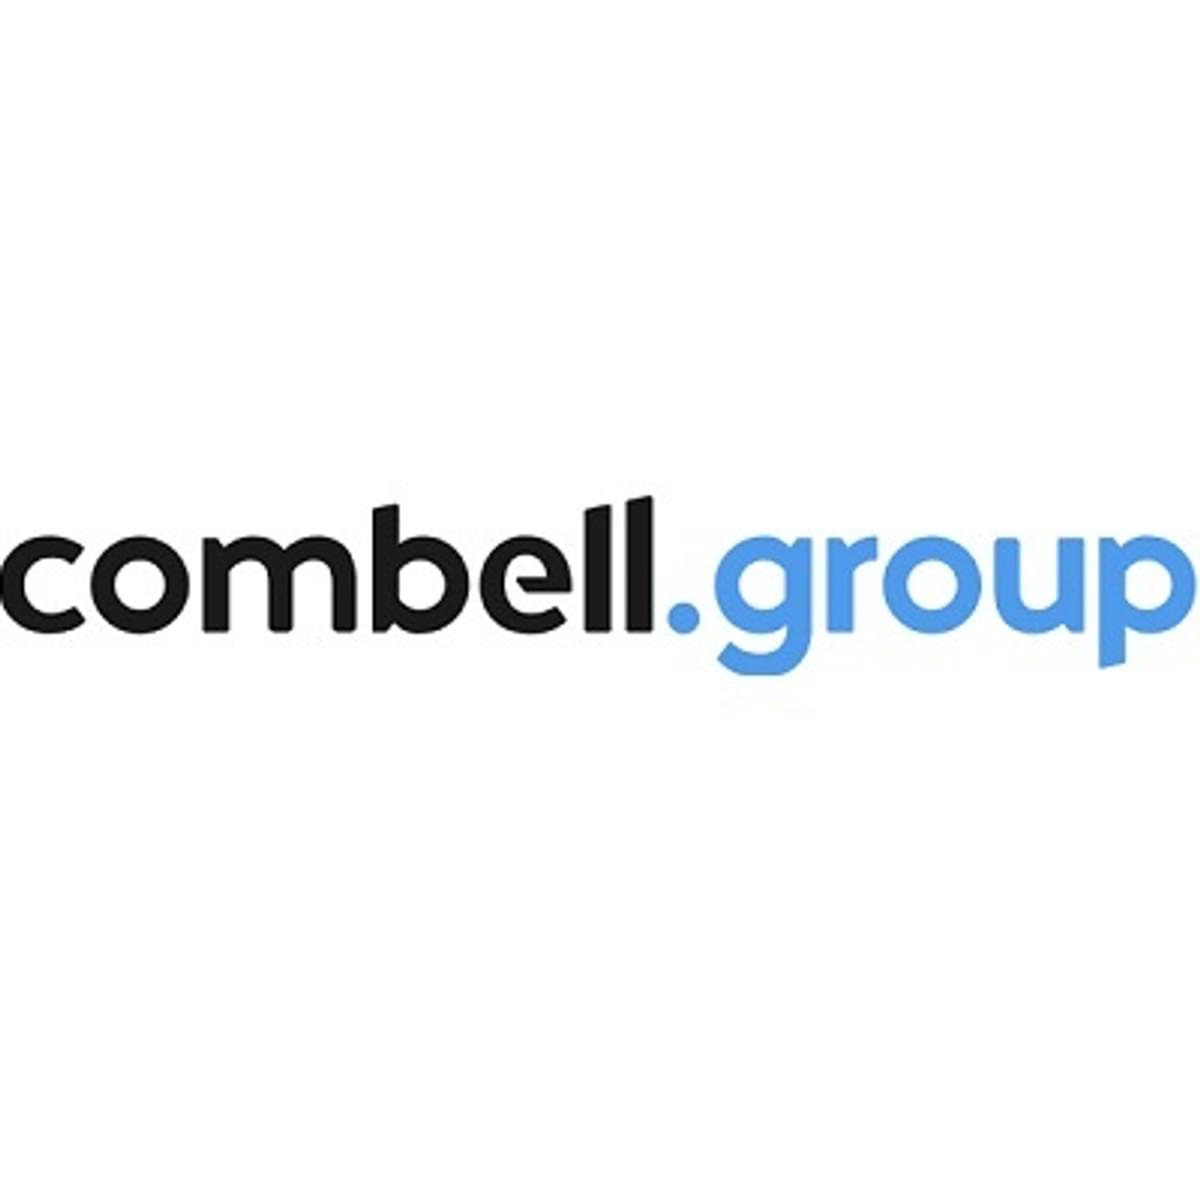 Hg volgt Waterland op als investeerder in Combell Group image